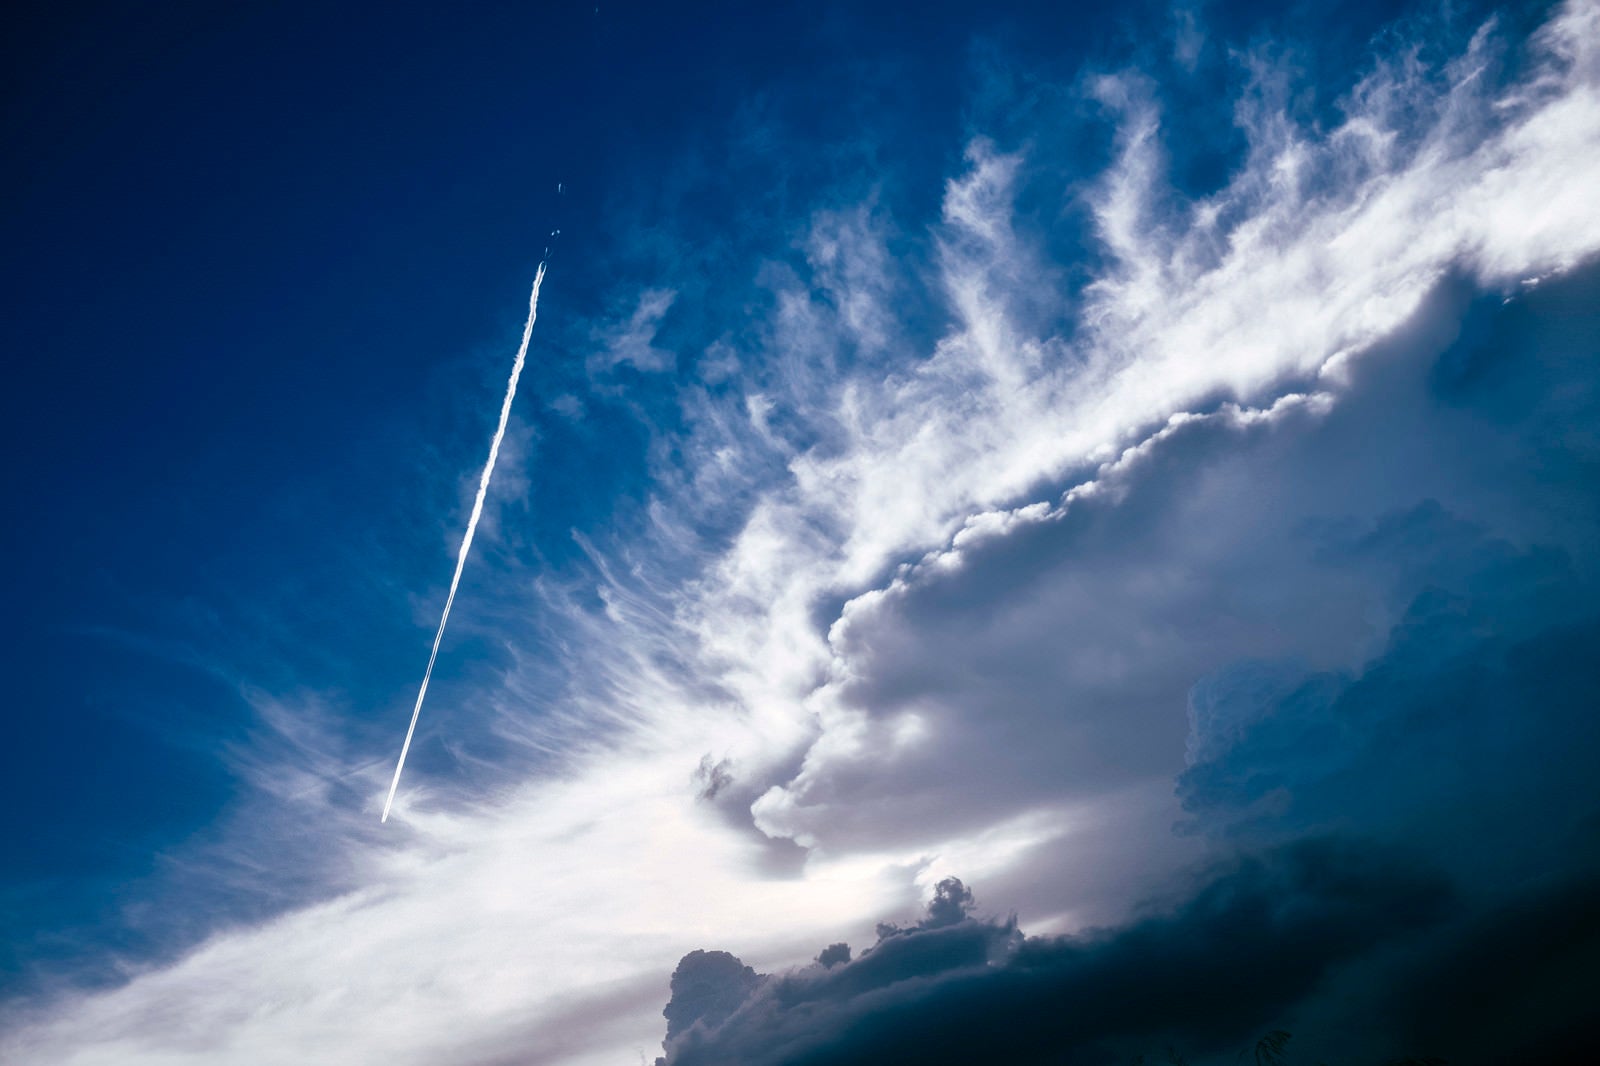 「かなとこ雲のそばを飛んで行く飛行機雲」の写真